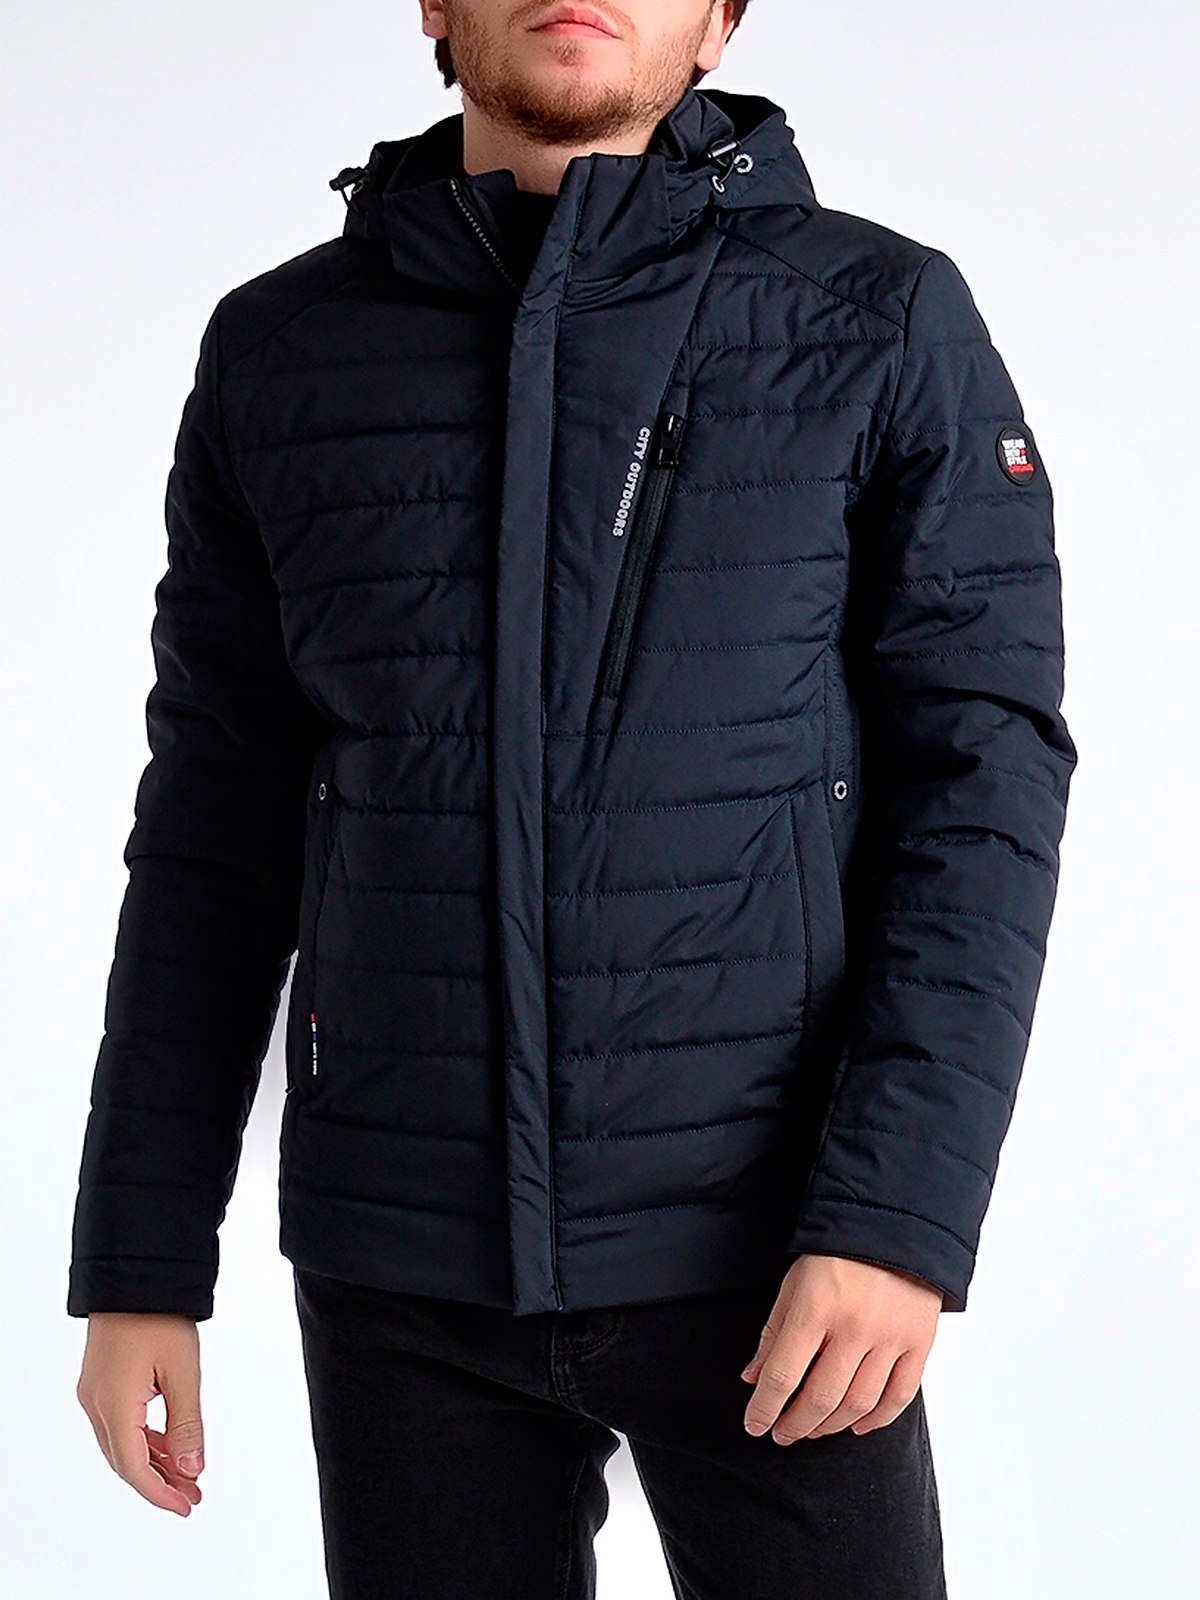 Зимняя куртка мужская производитель. DSGDONG куртка мужская 6547-l-10#. DSG-8310-141 куртка мужская. Куртка DSG eco2.